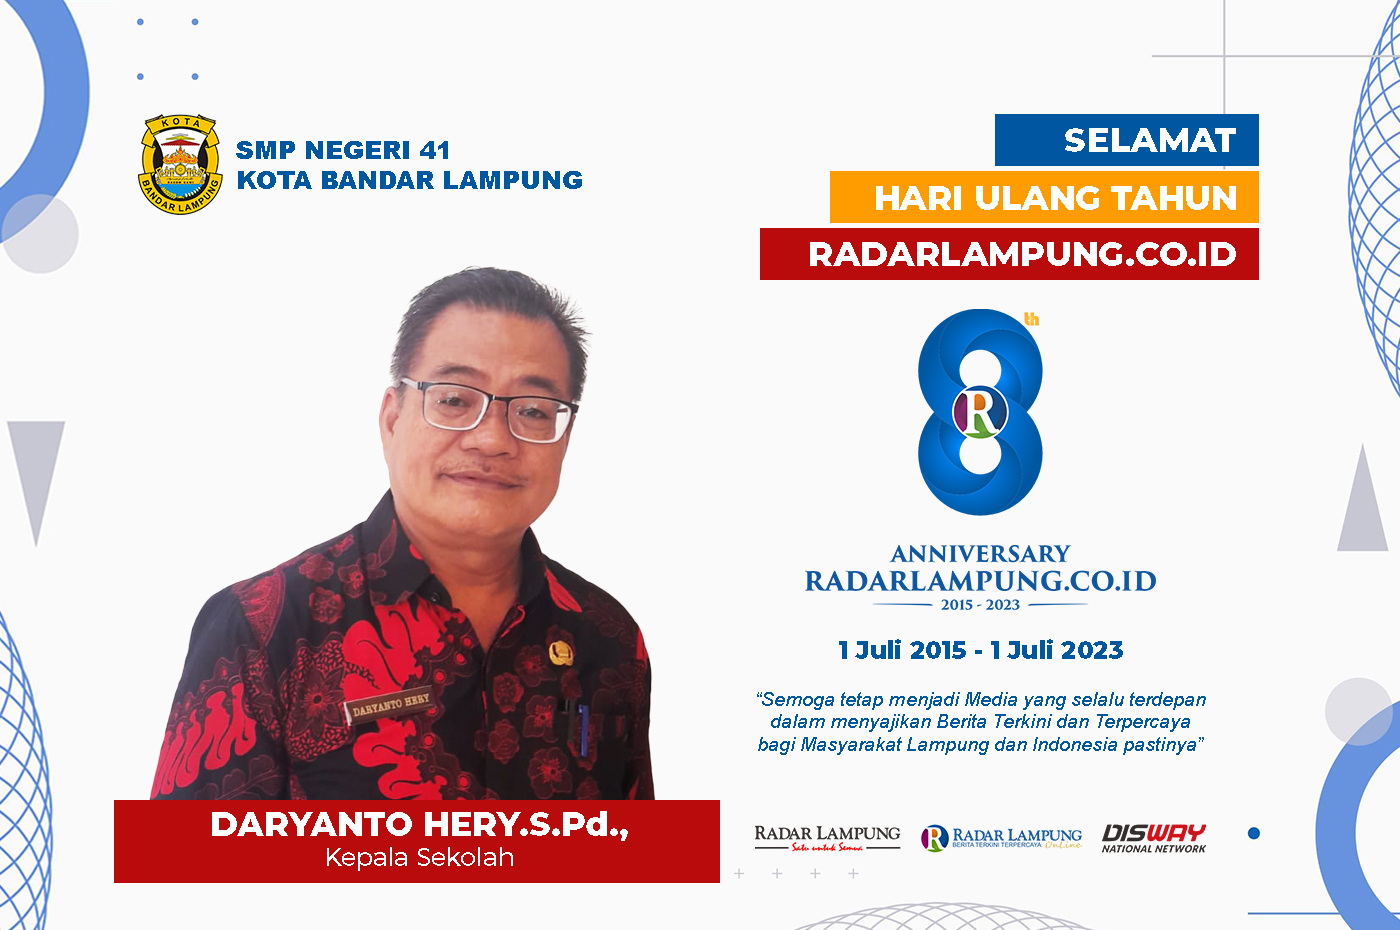 SMP Negeri 41 Kota Bandar Lampung: Selamat Hari Jadi Radar Lampung Online ke-8